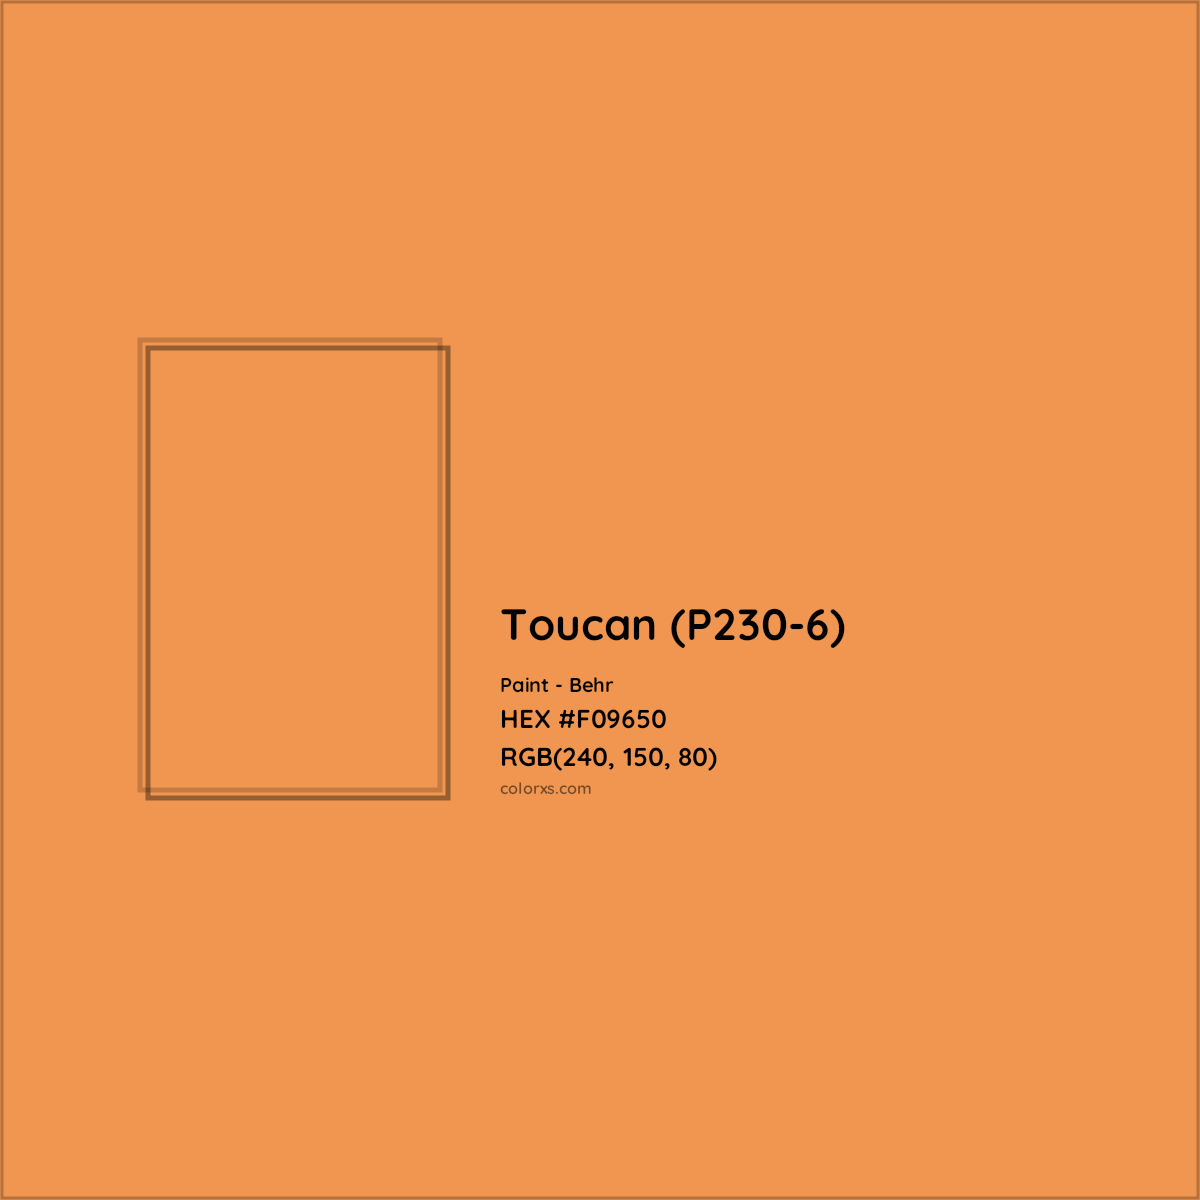 HEX #F09650 Toucan (P230-6) Paint Behr - Color Code